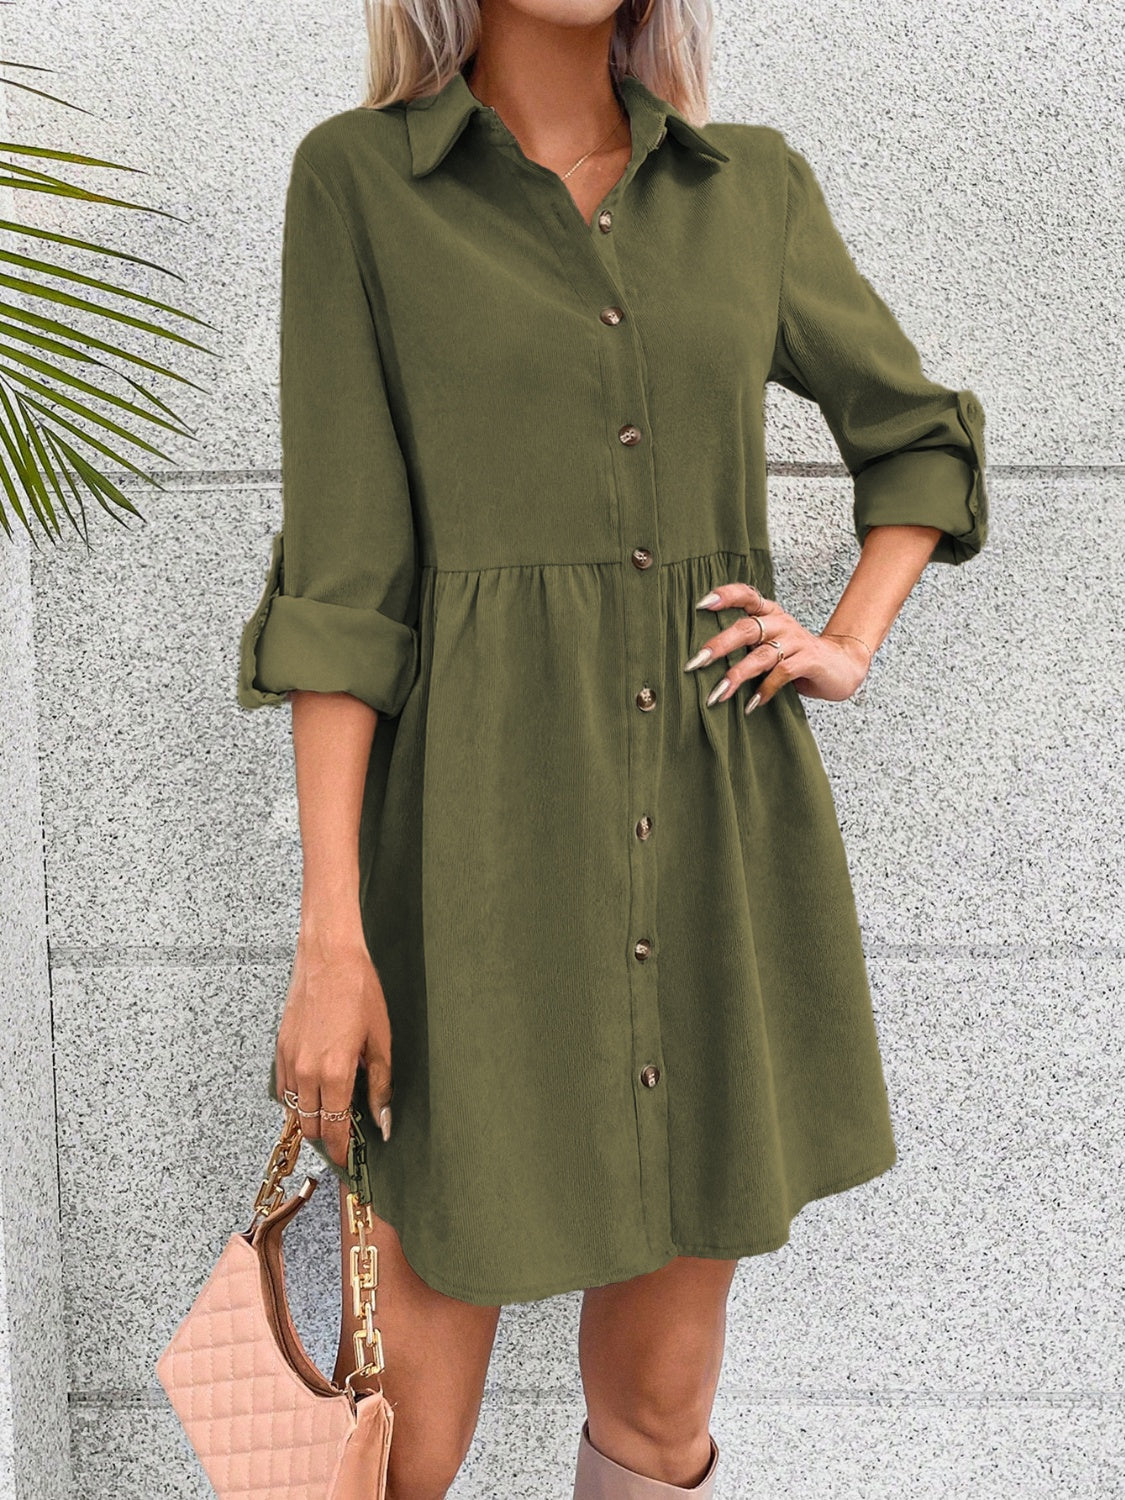 TEEK - Army Green Button Up Collared Neck Long Sleeve Dress DRESS TEEK Trend   